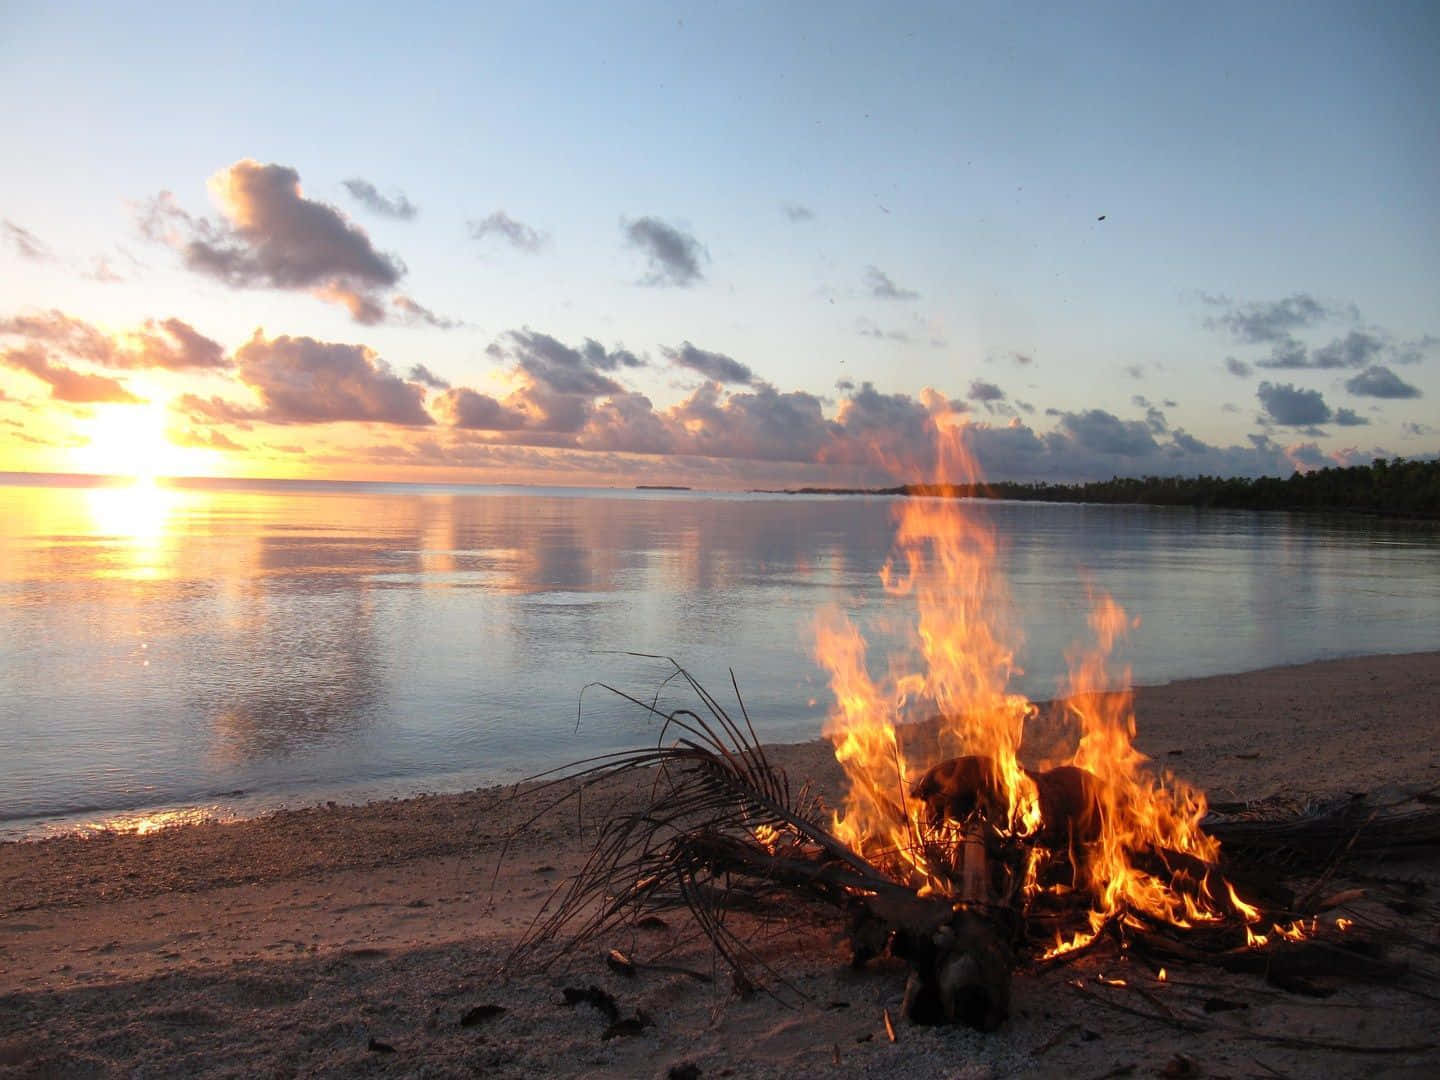 A cozy beach bonfire on a serene evening Wallpaper